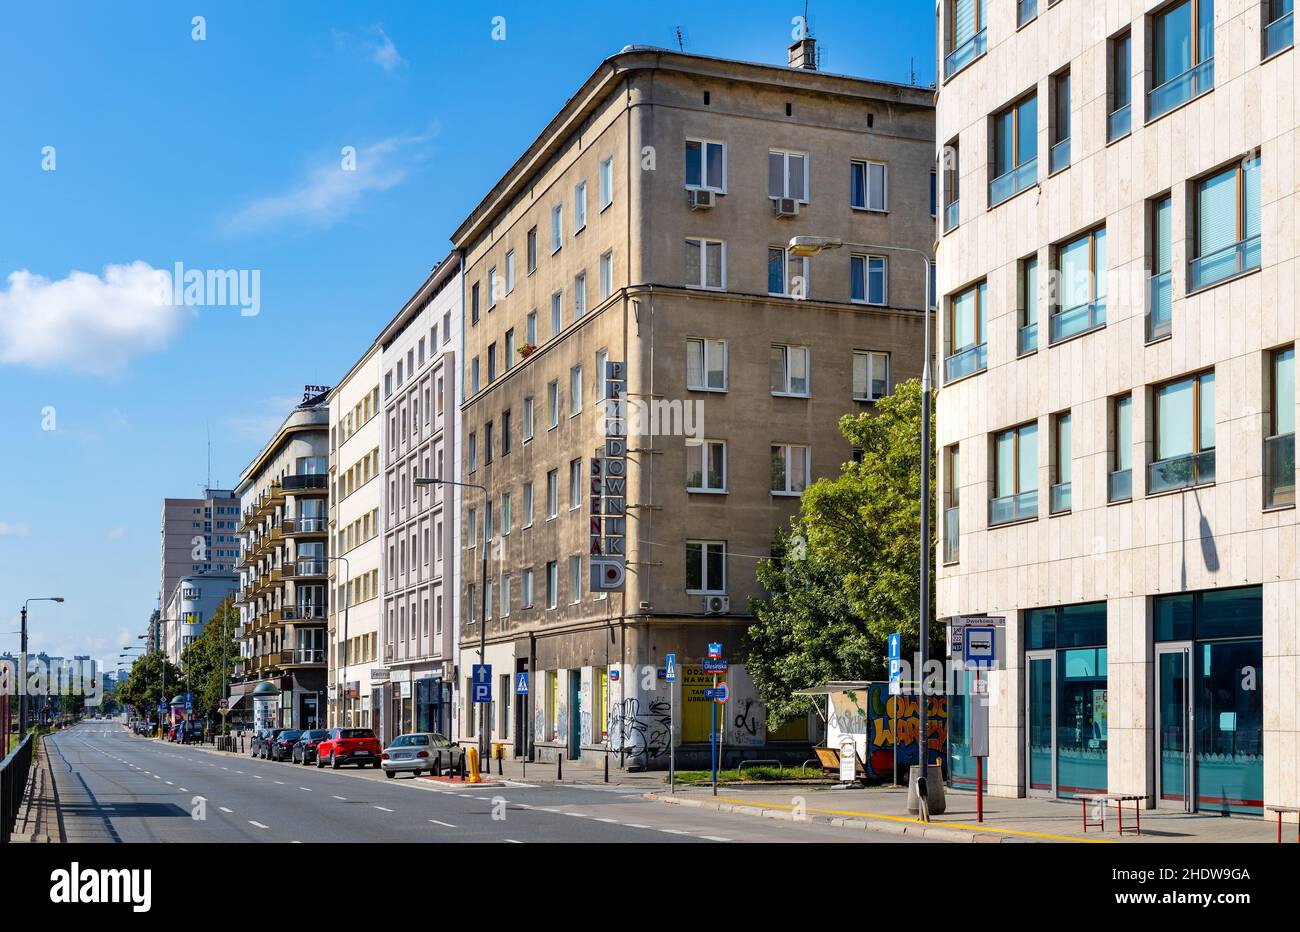 Varsavia, Polonia - 11 luglio 2021: Panorama di via Pulawska con un mix di architettura residenziale storica, comunista e modernista a Mokotow Foto Stock